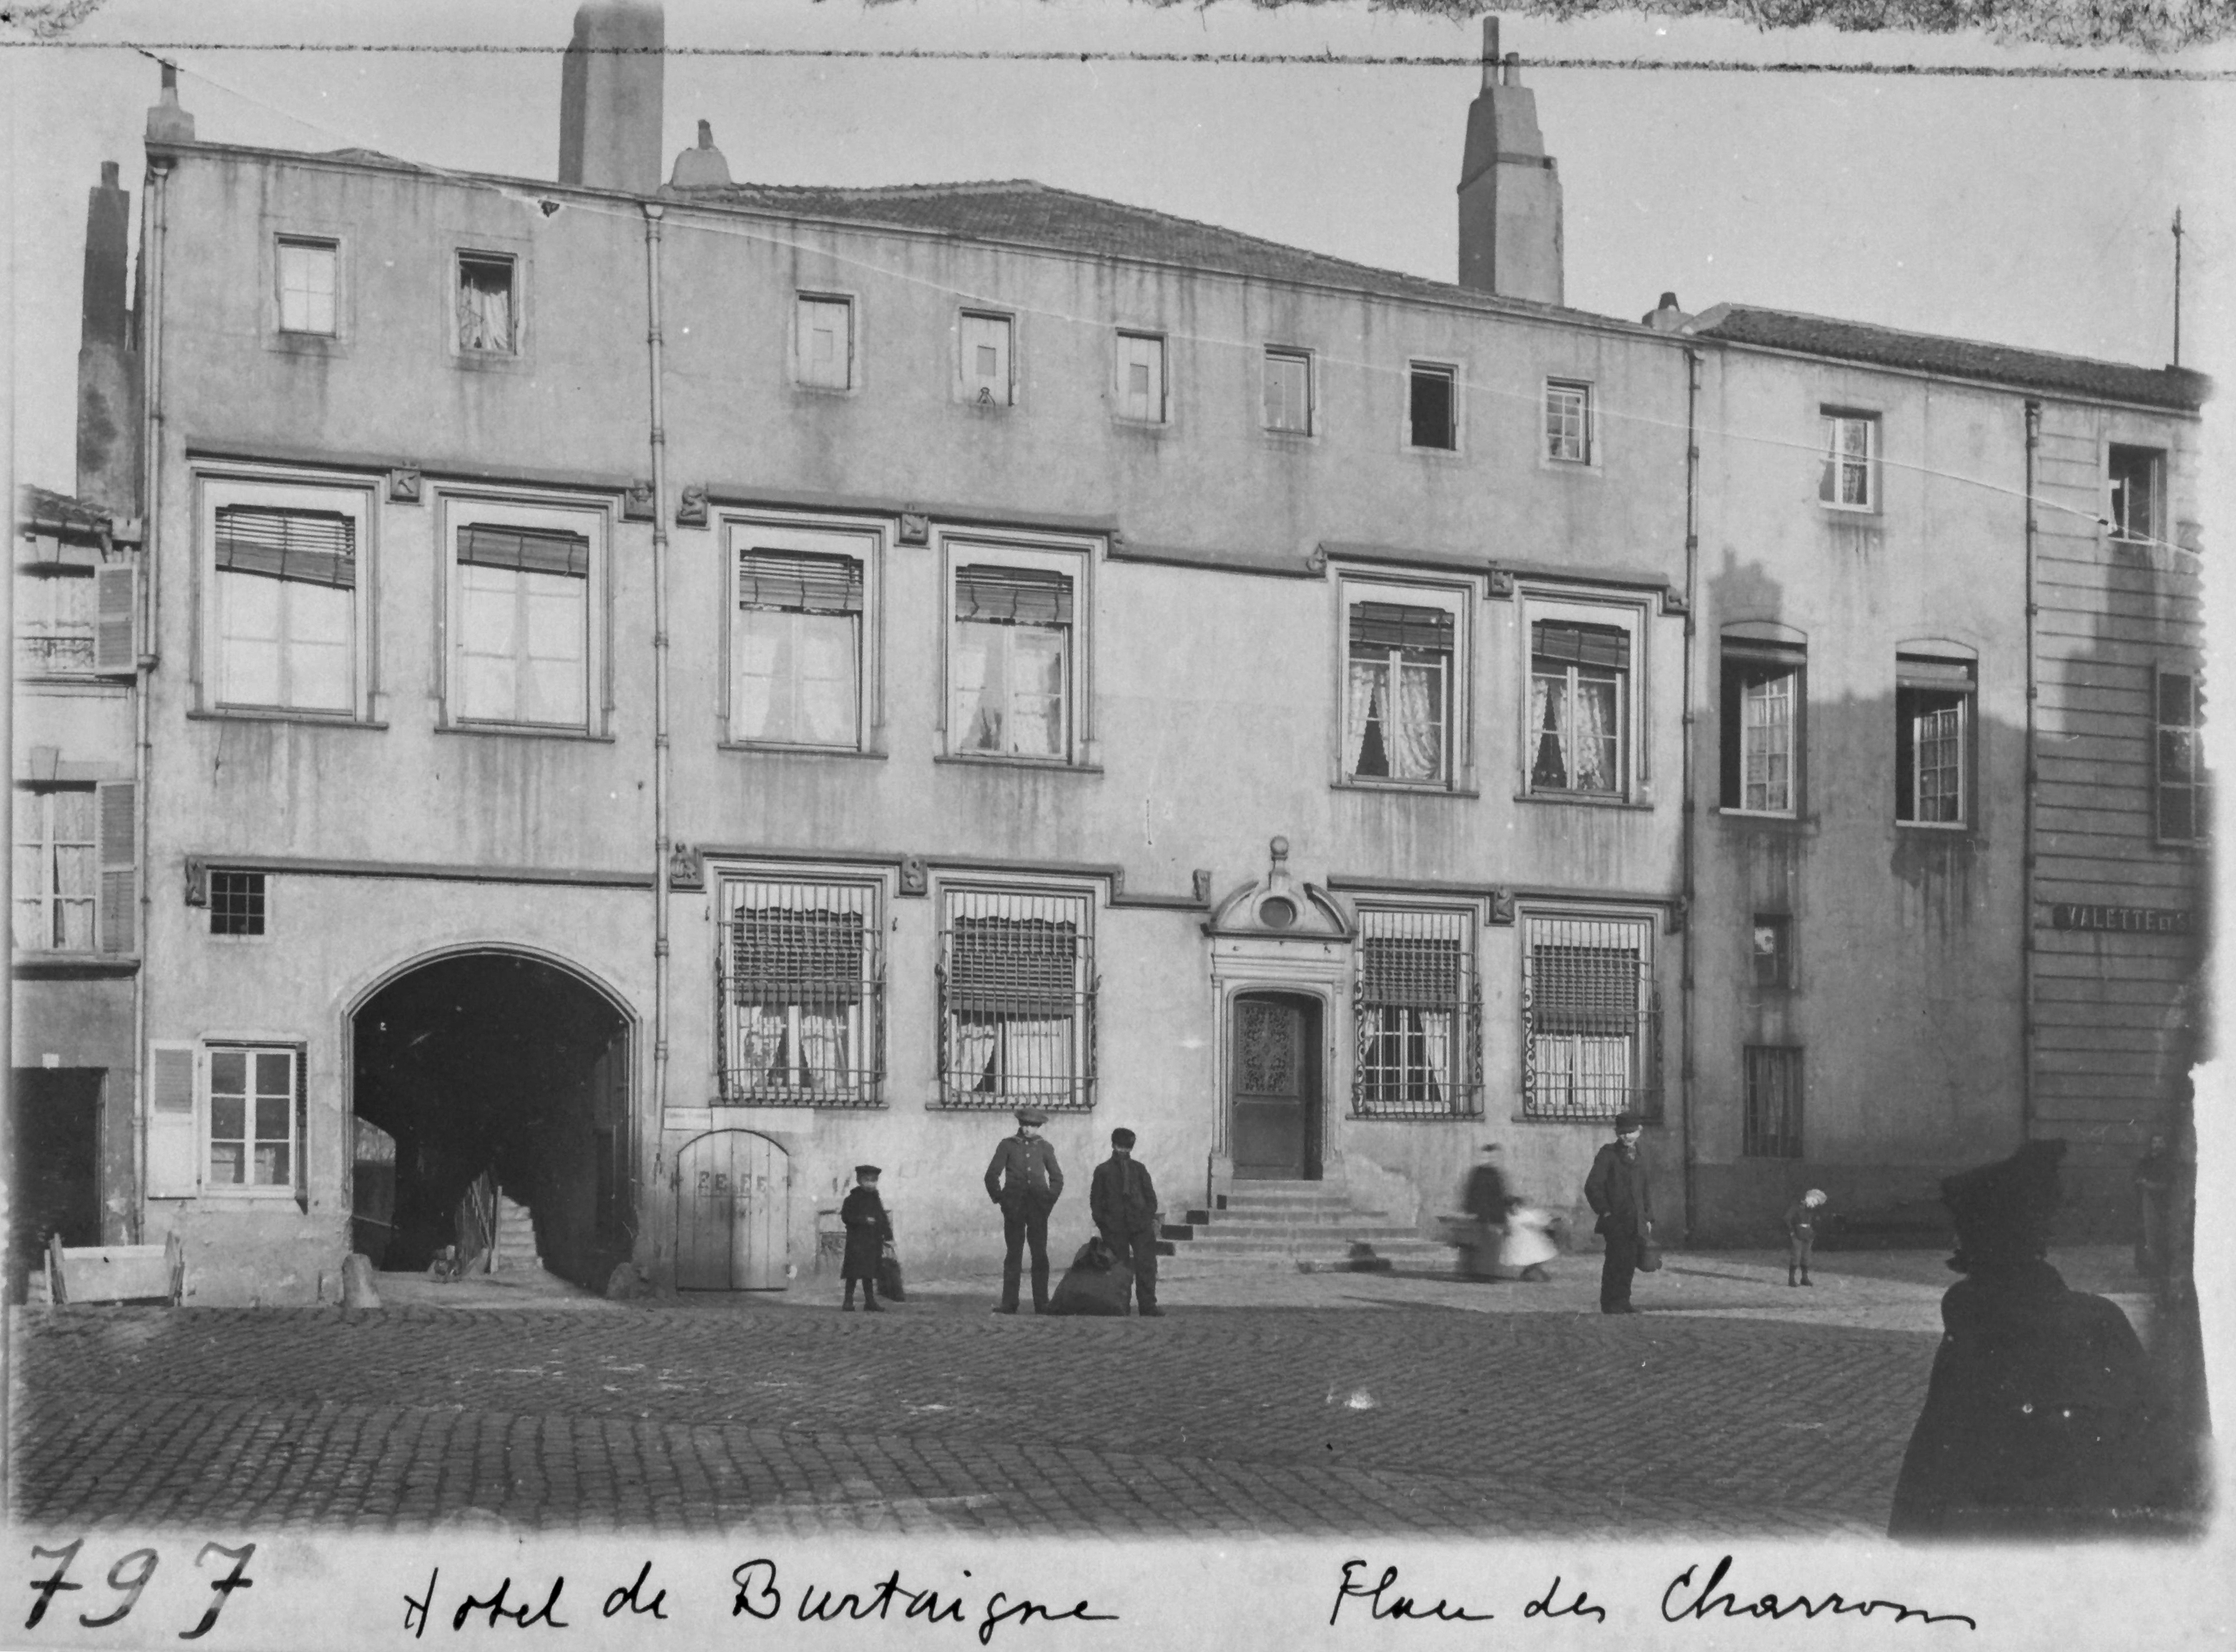 Contenu du Hôtel de Burtaigne, place des Charrons